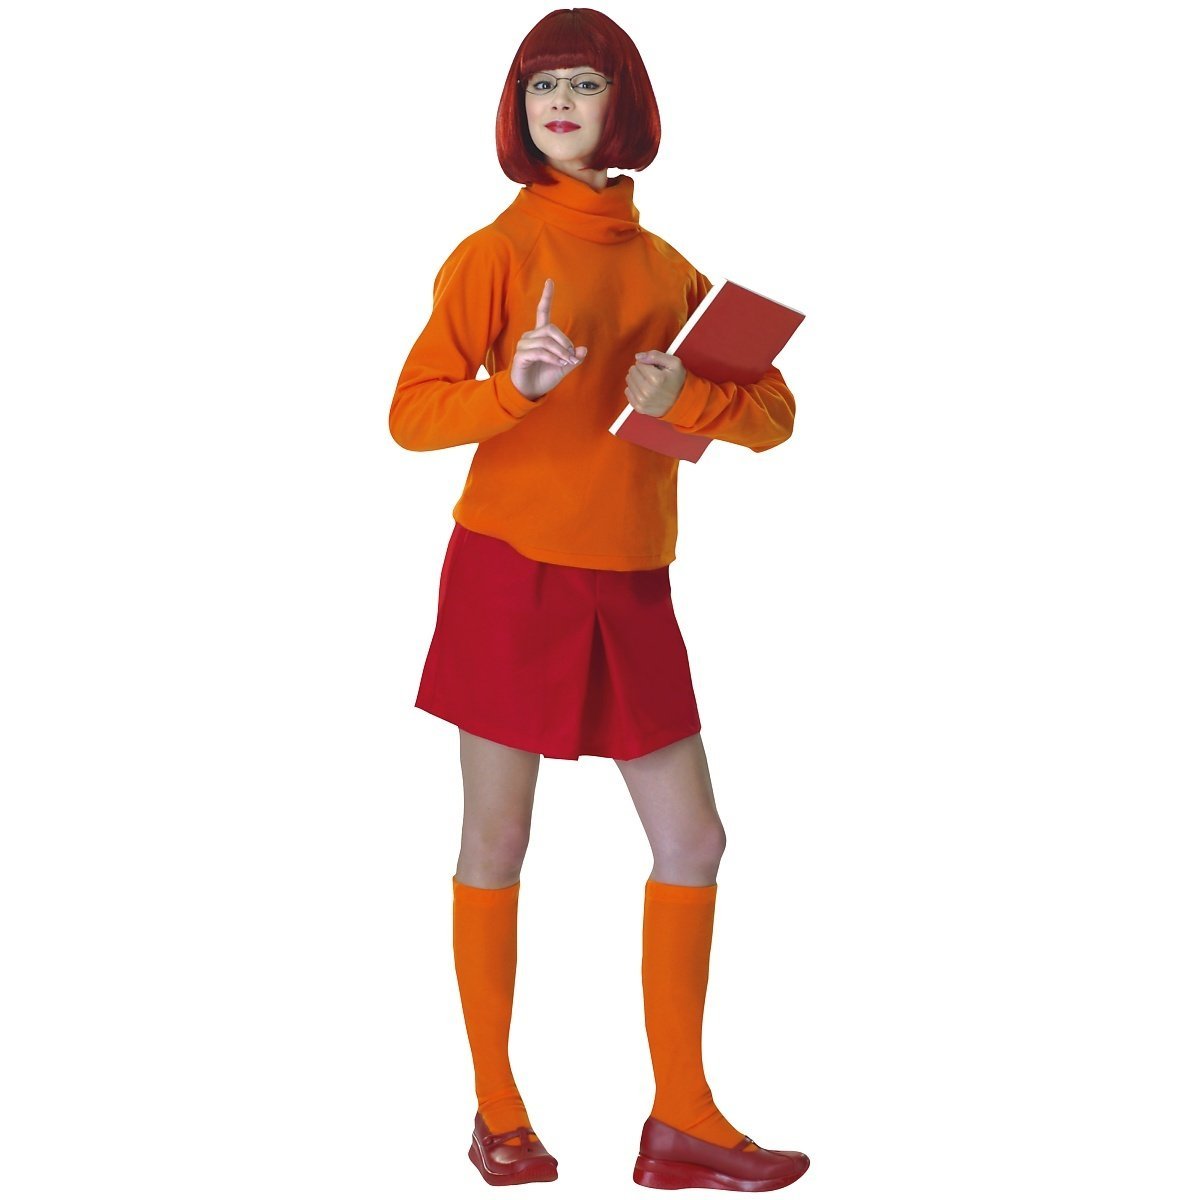 Velma Scooby Doo Costume.